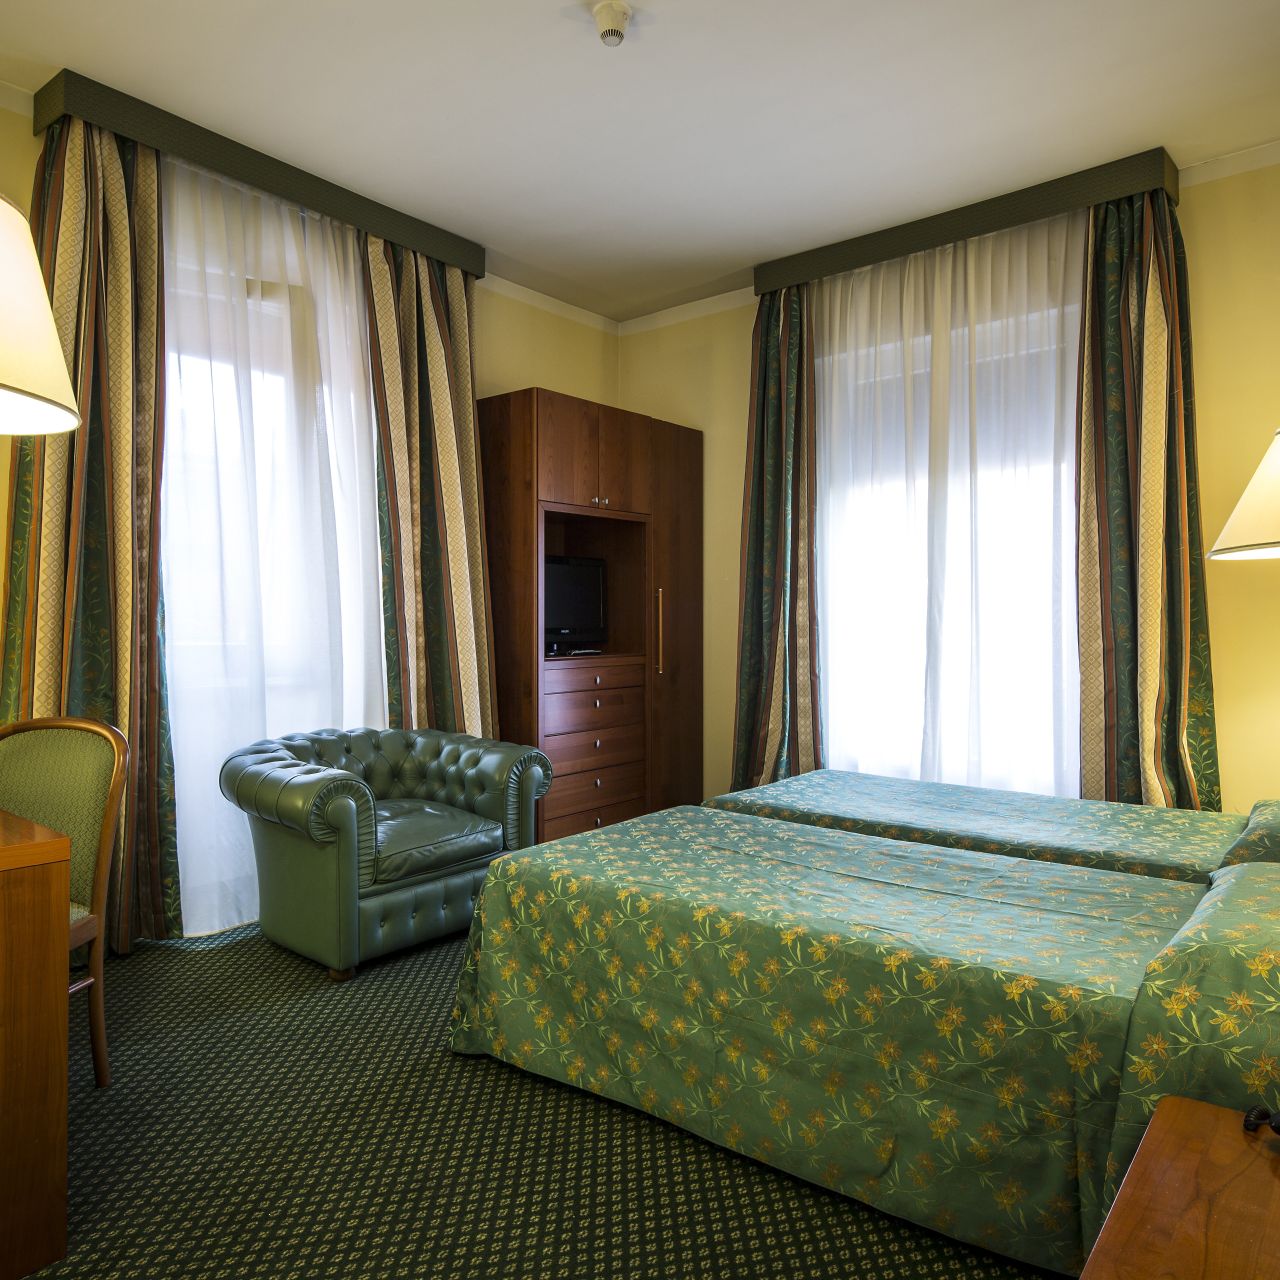 Nuovo Hotel del Porto - Bologna - Great prices at HOTEL INFO